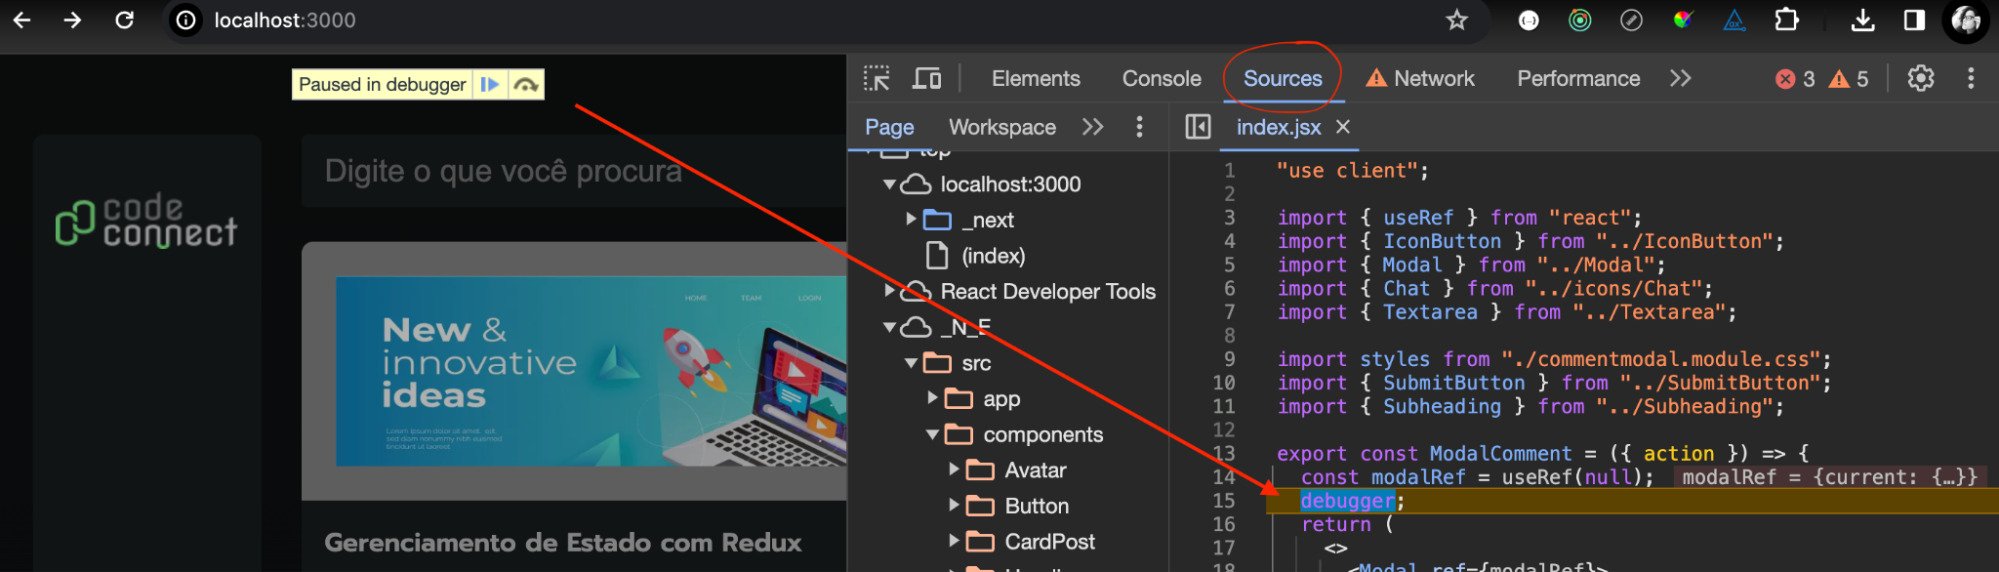 Ferramenta developer tools aberta com seta vermelha indicando metodo de debugger adicionado ao codigo.